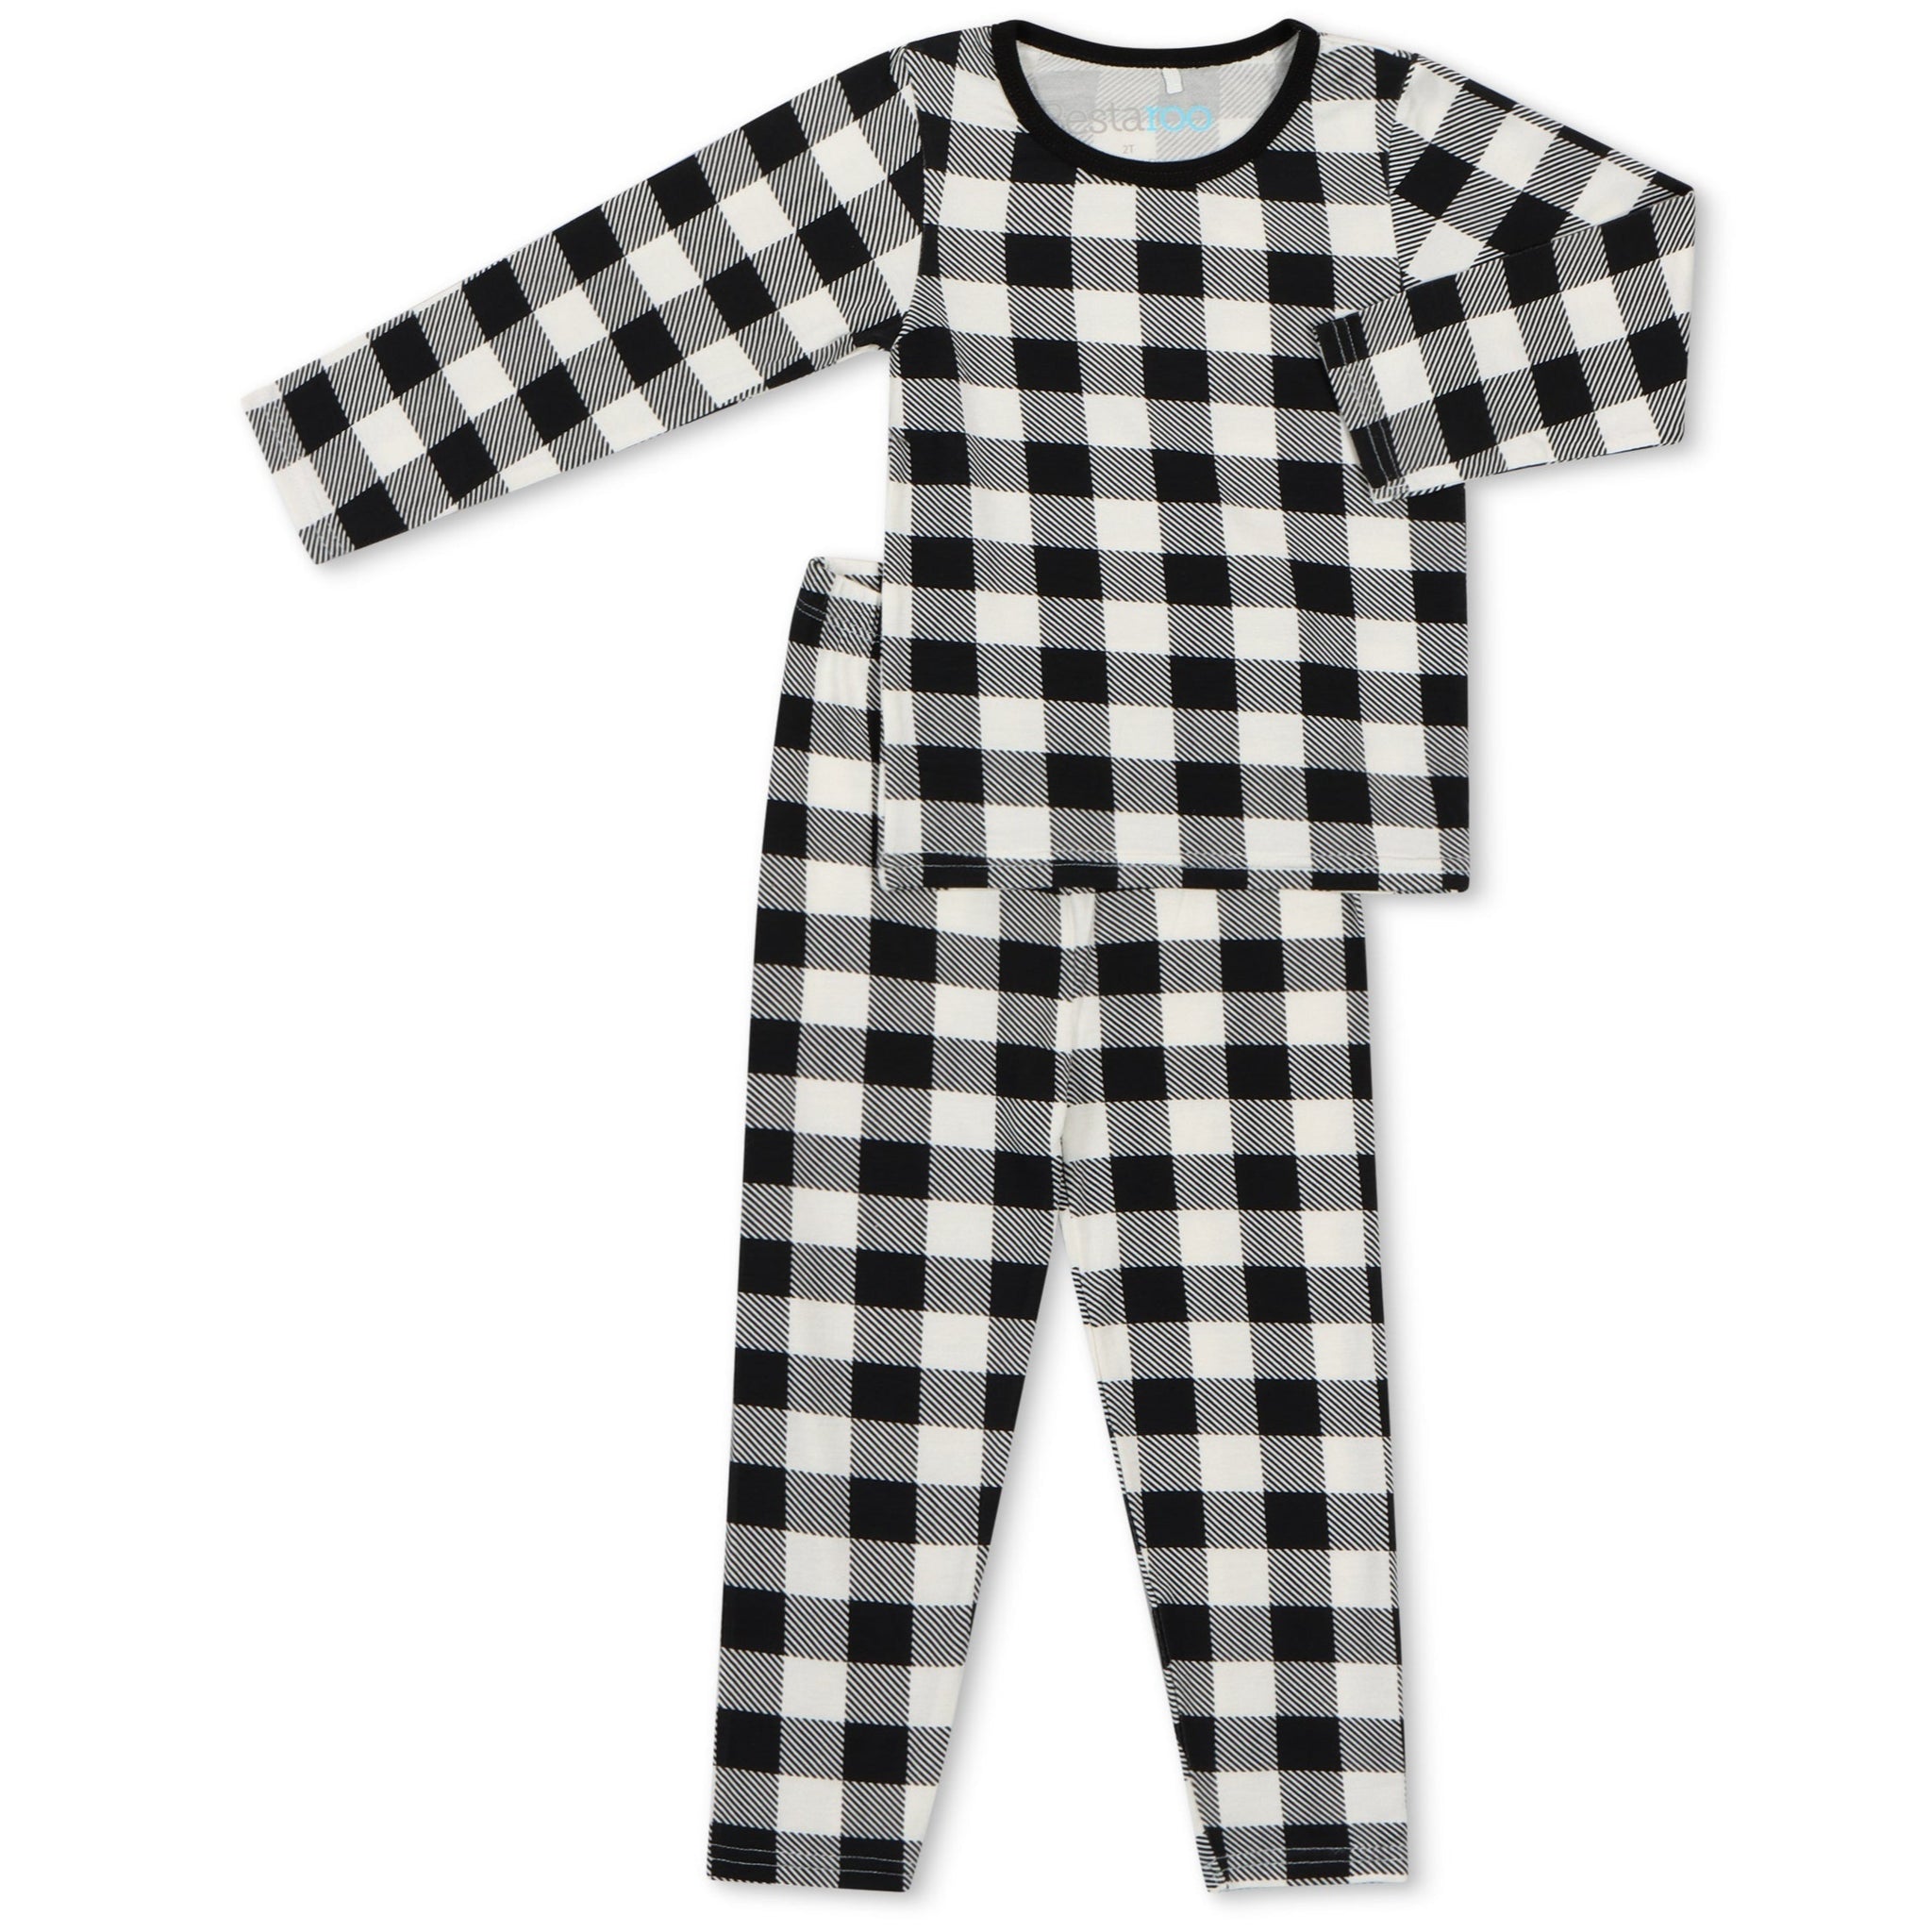 Black & White Plaid Pajama Pajama